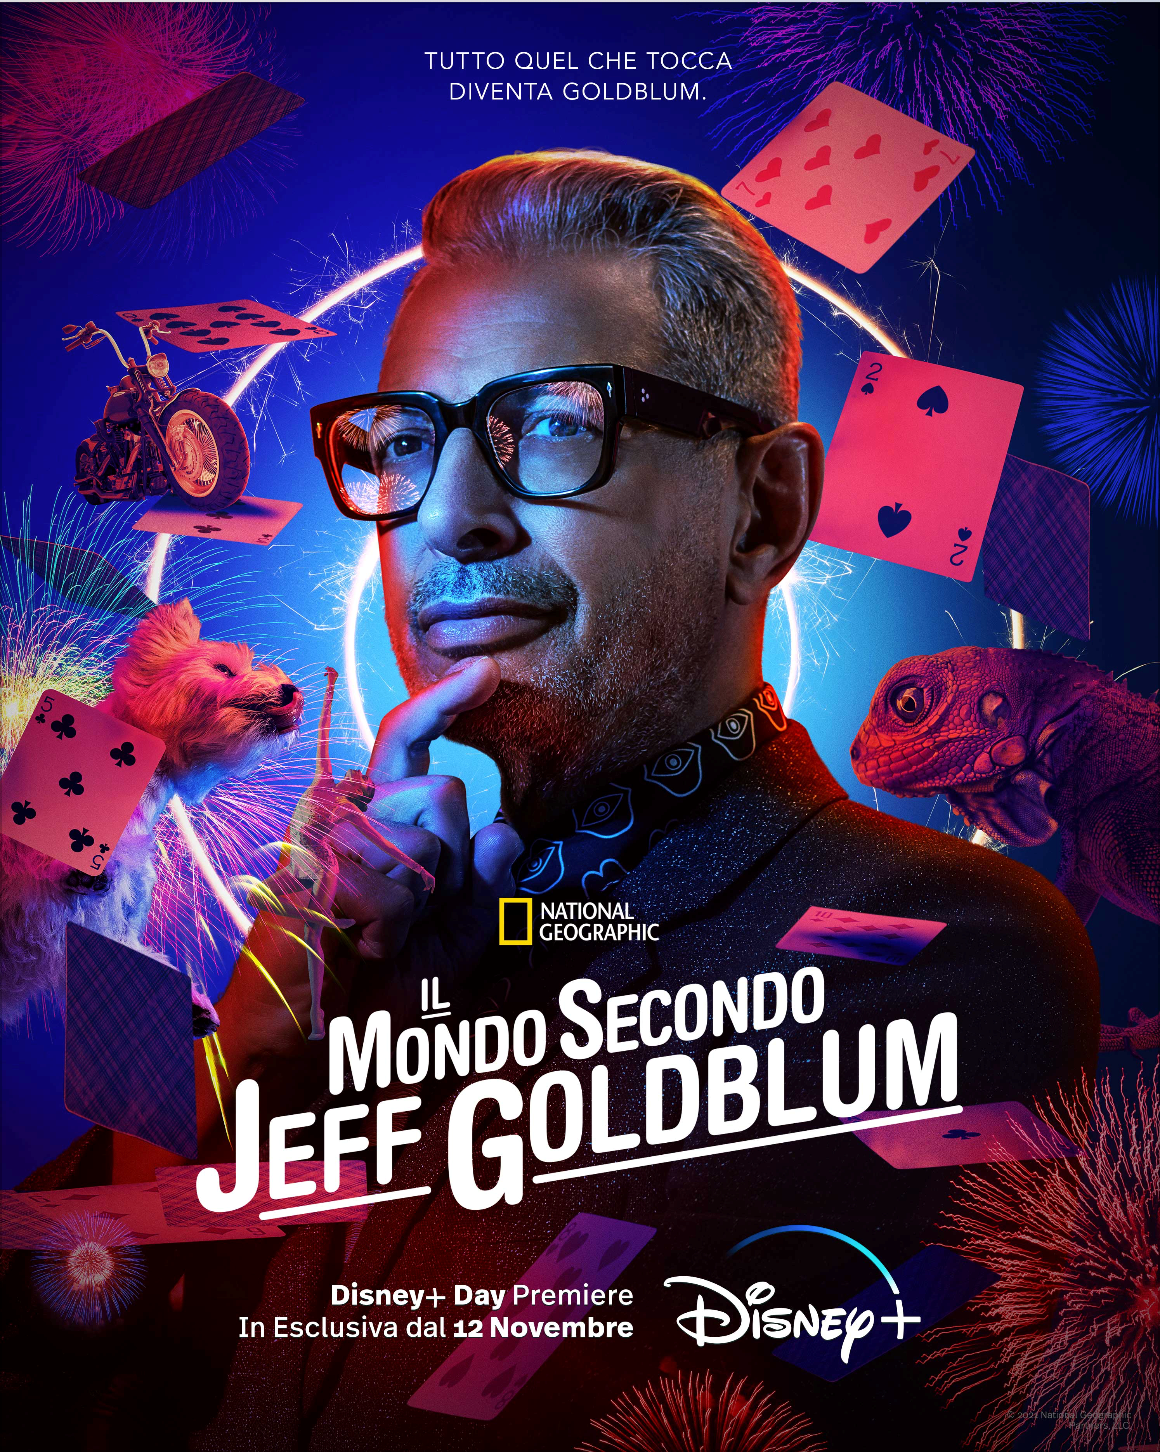 La seconda stagione de Il Mondo Secondo Jeff Goldblum